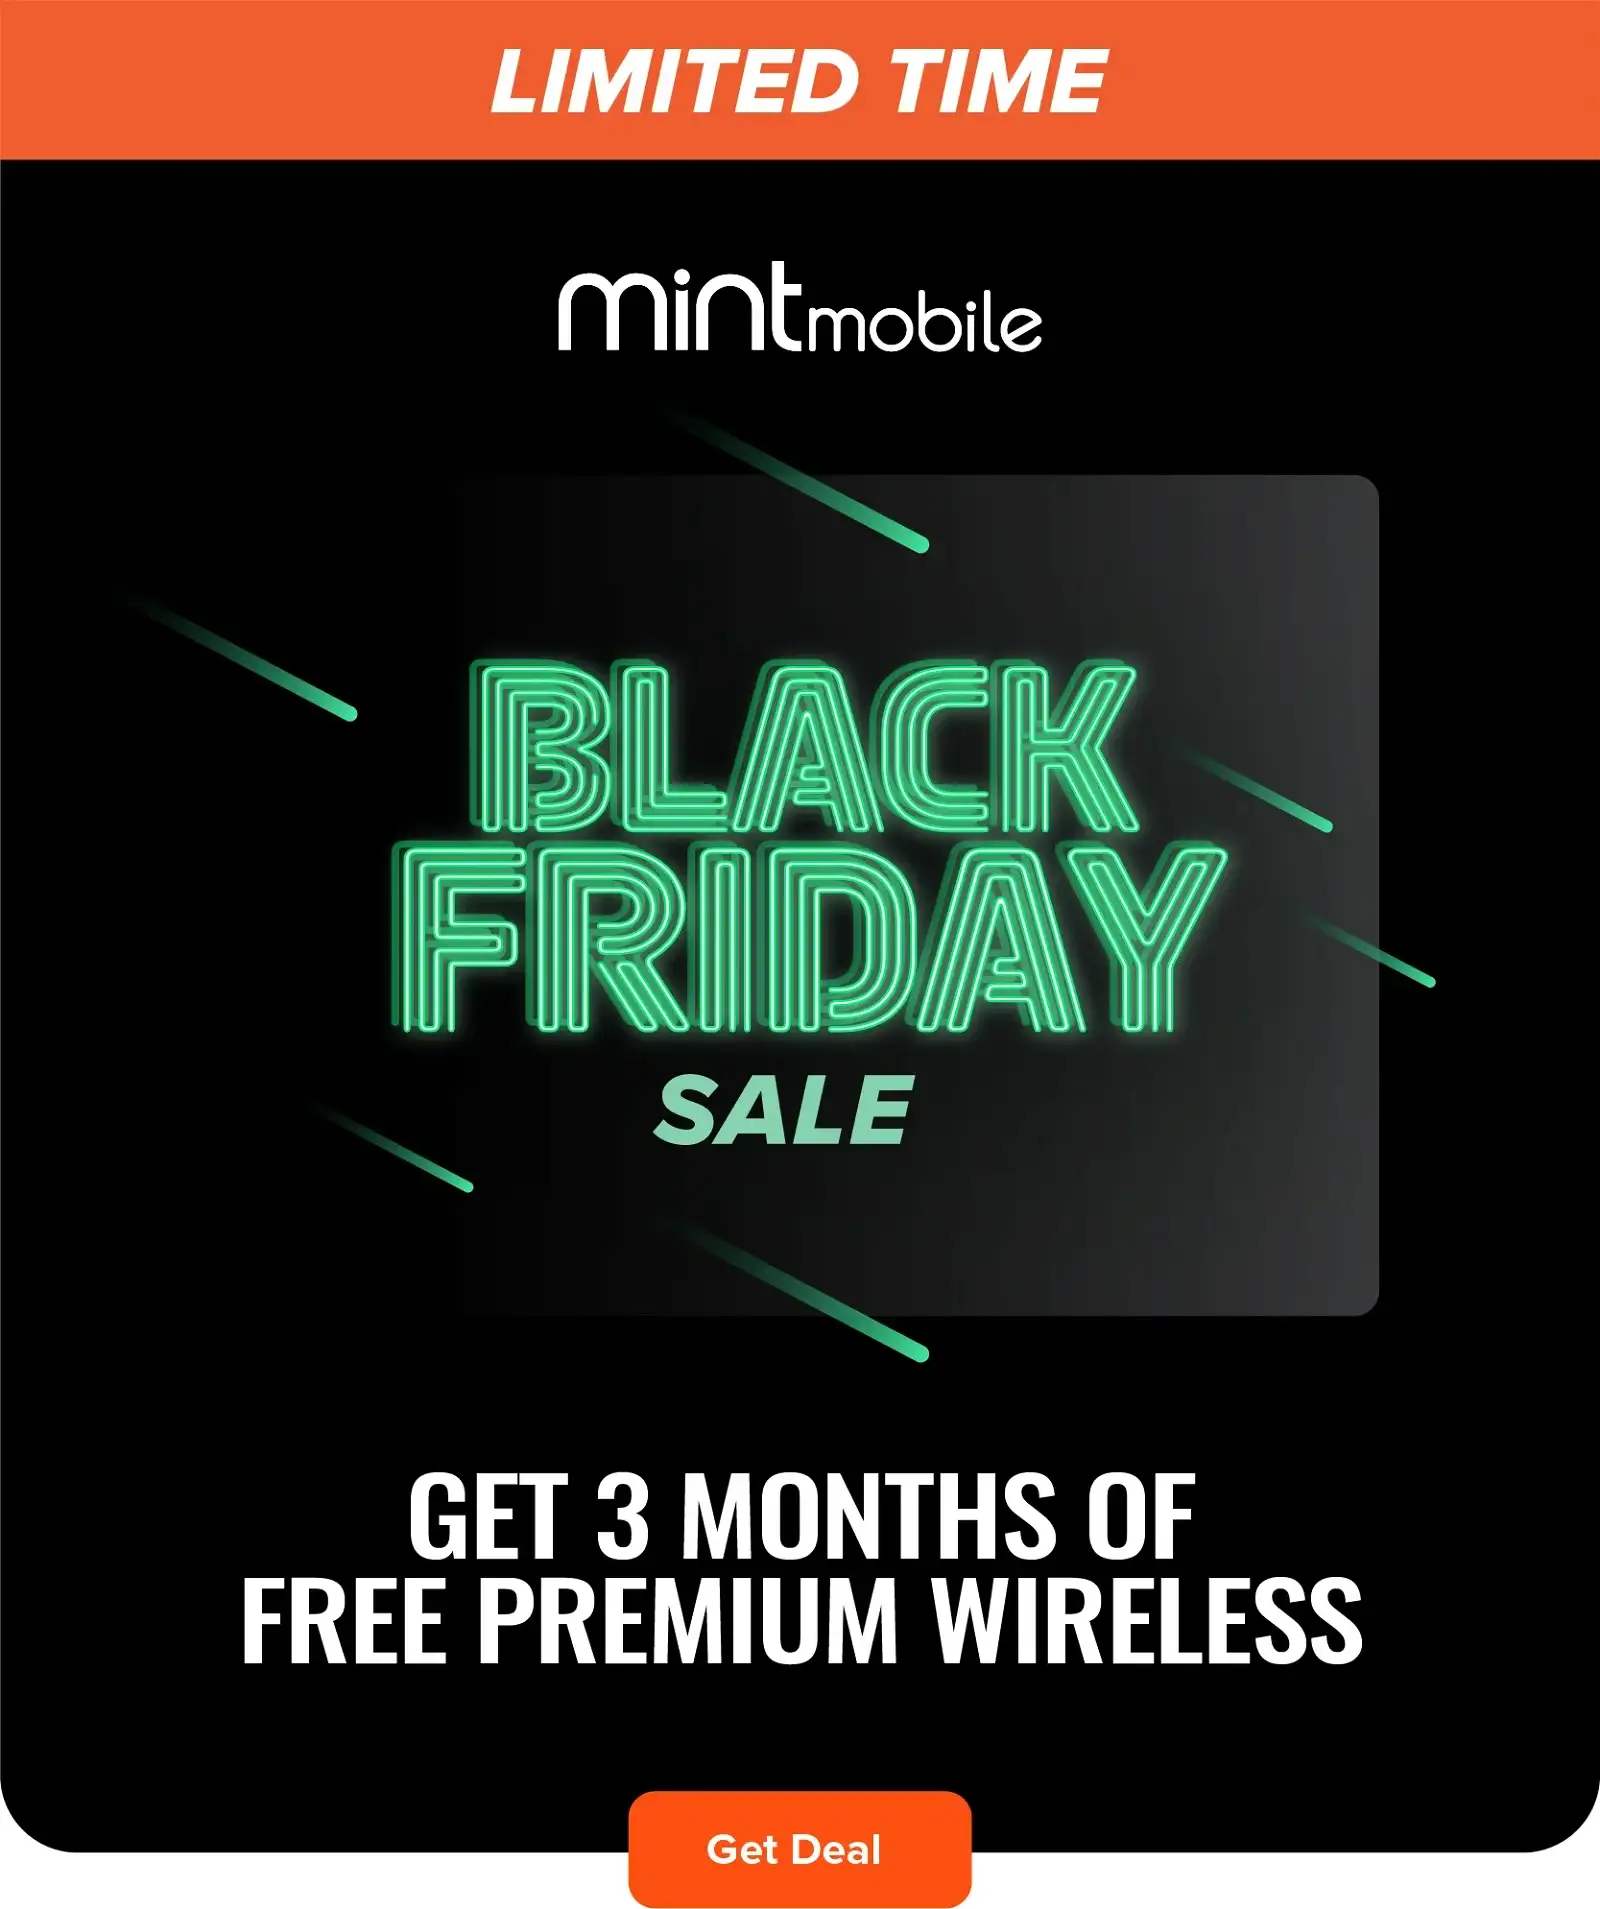 Black Friday Sale - Get 3 Months of FREE Premium Wireless